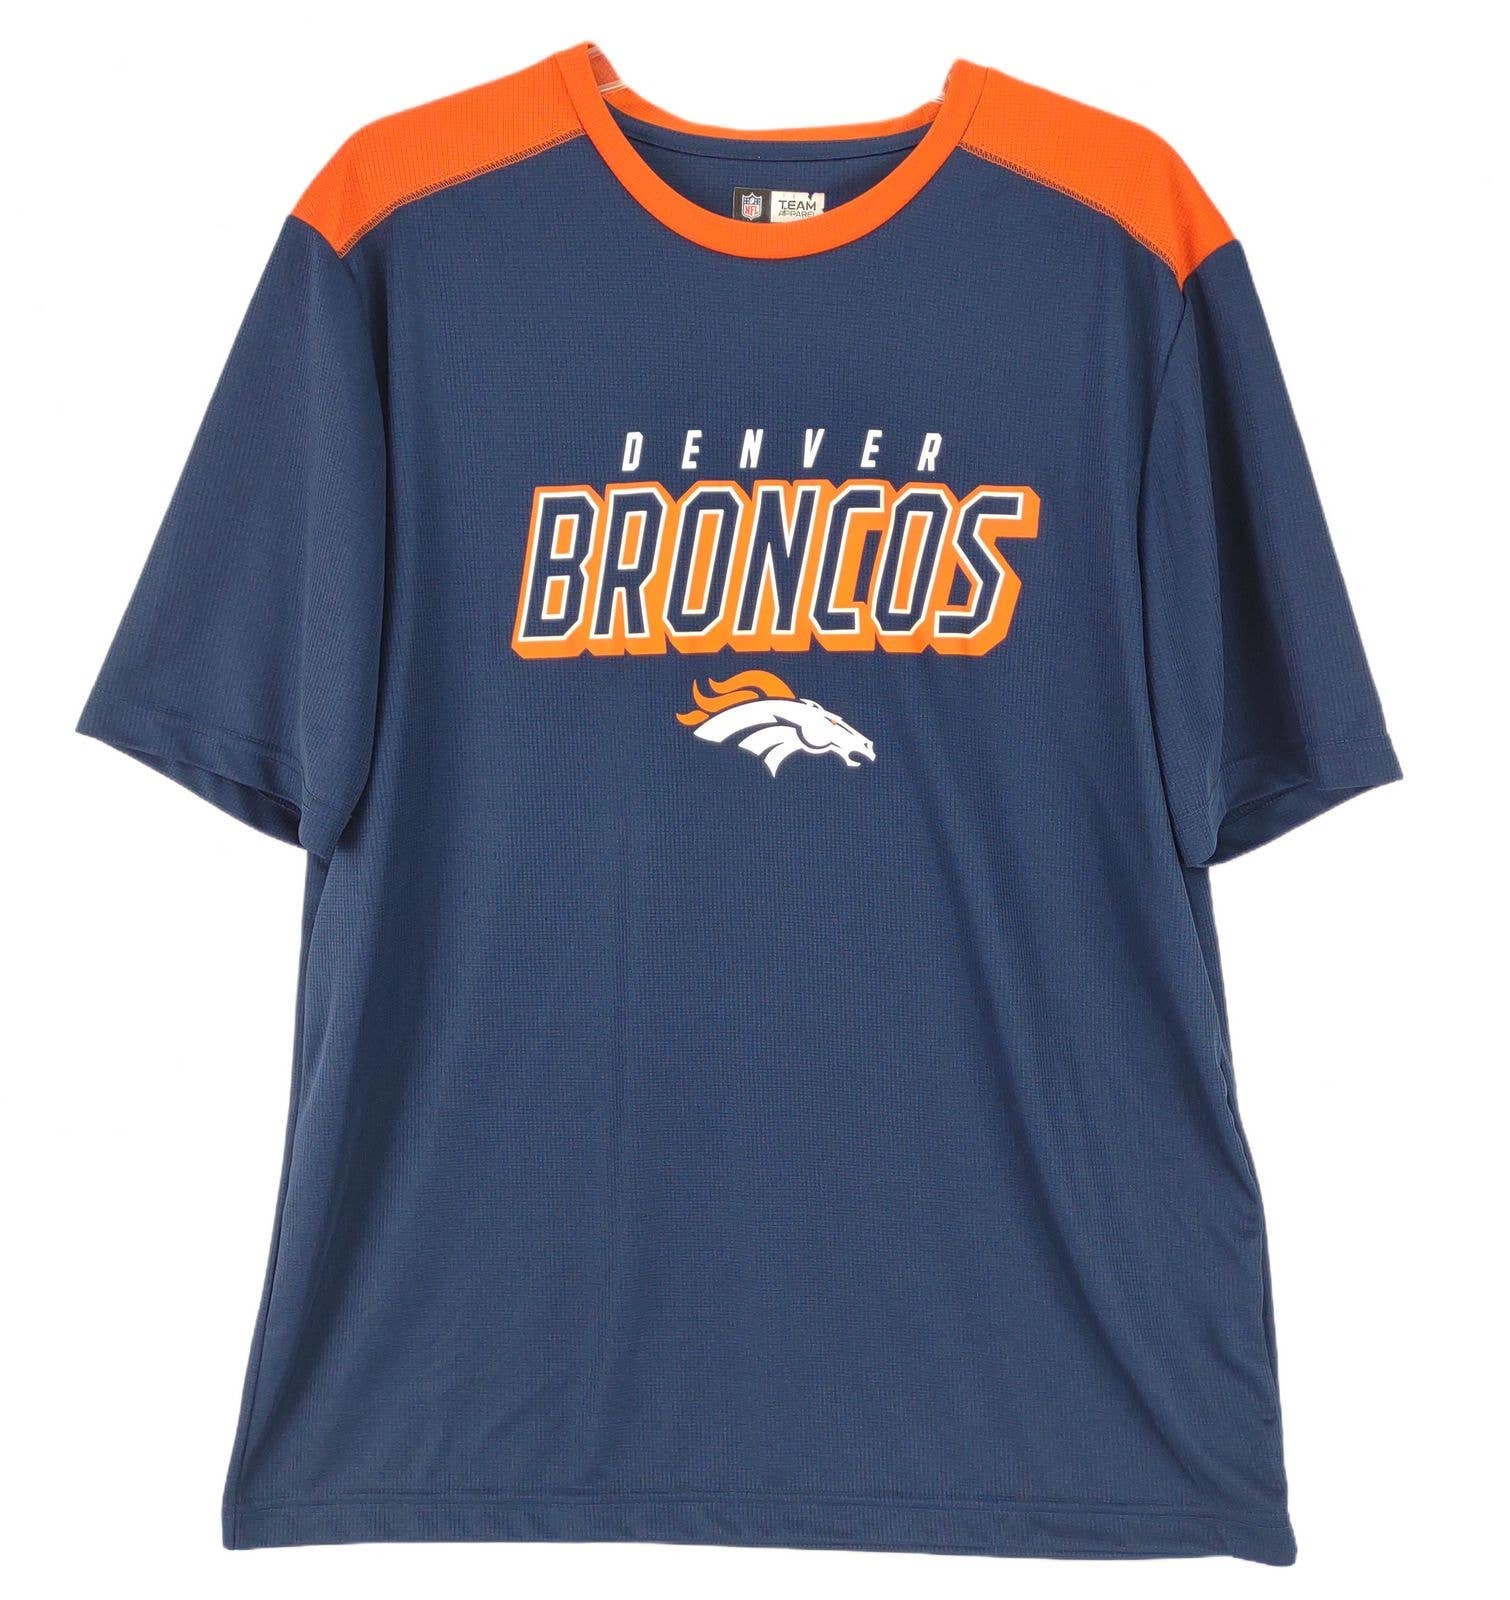 Primary image for NFL Team Apparel DENVER BRONCOS Men's Athletic Jersey T-Shirt,  XL Navy & Orange